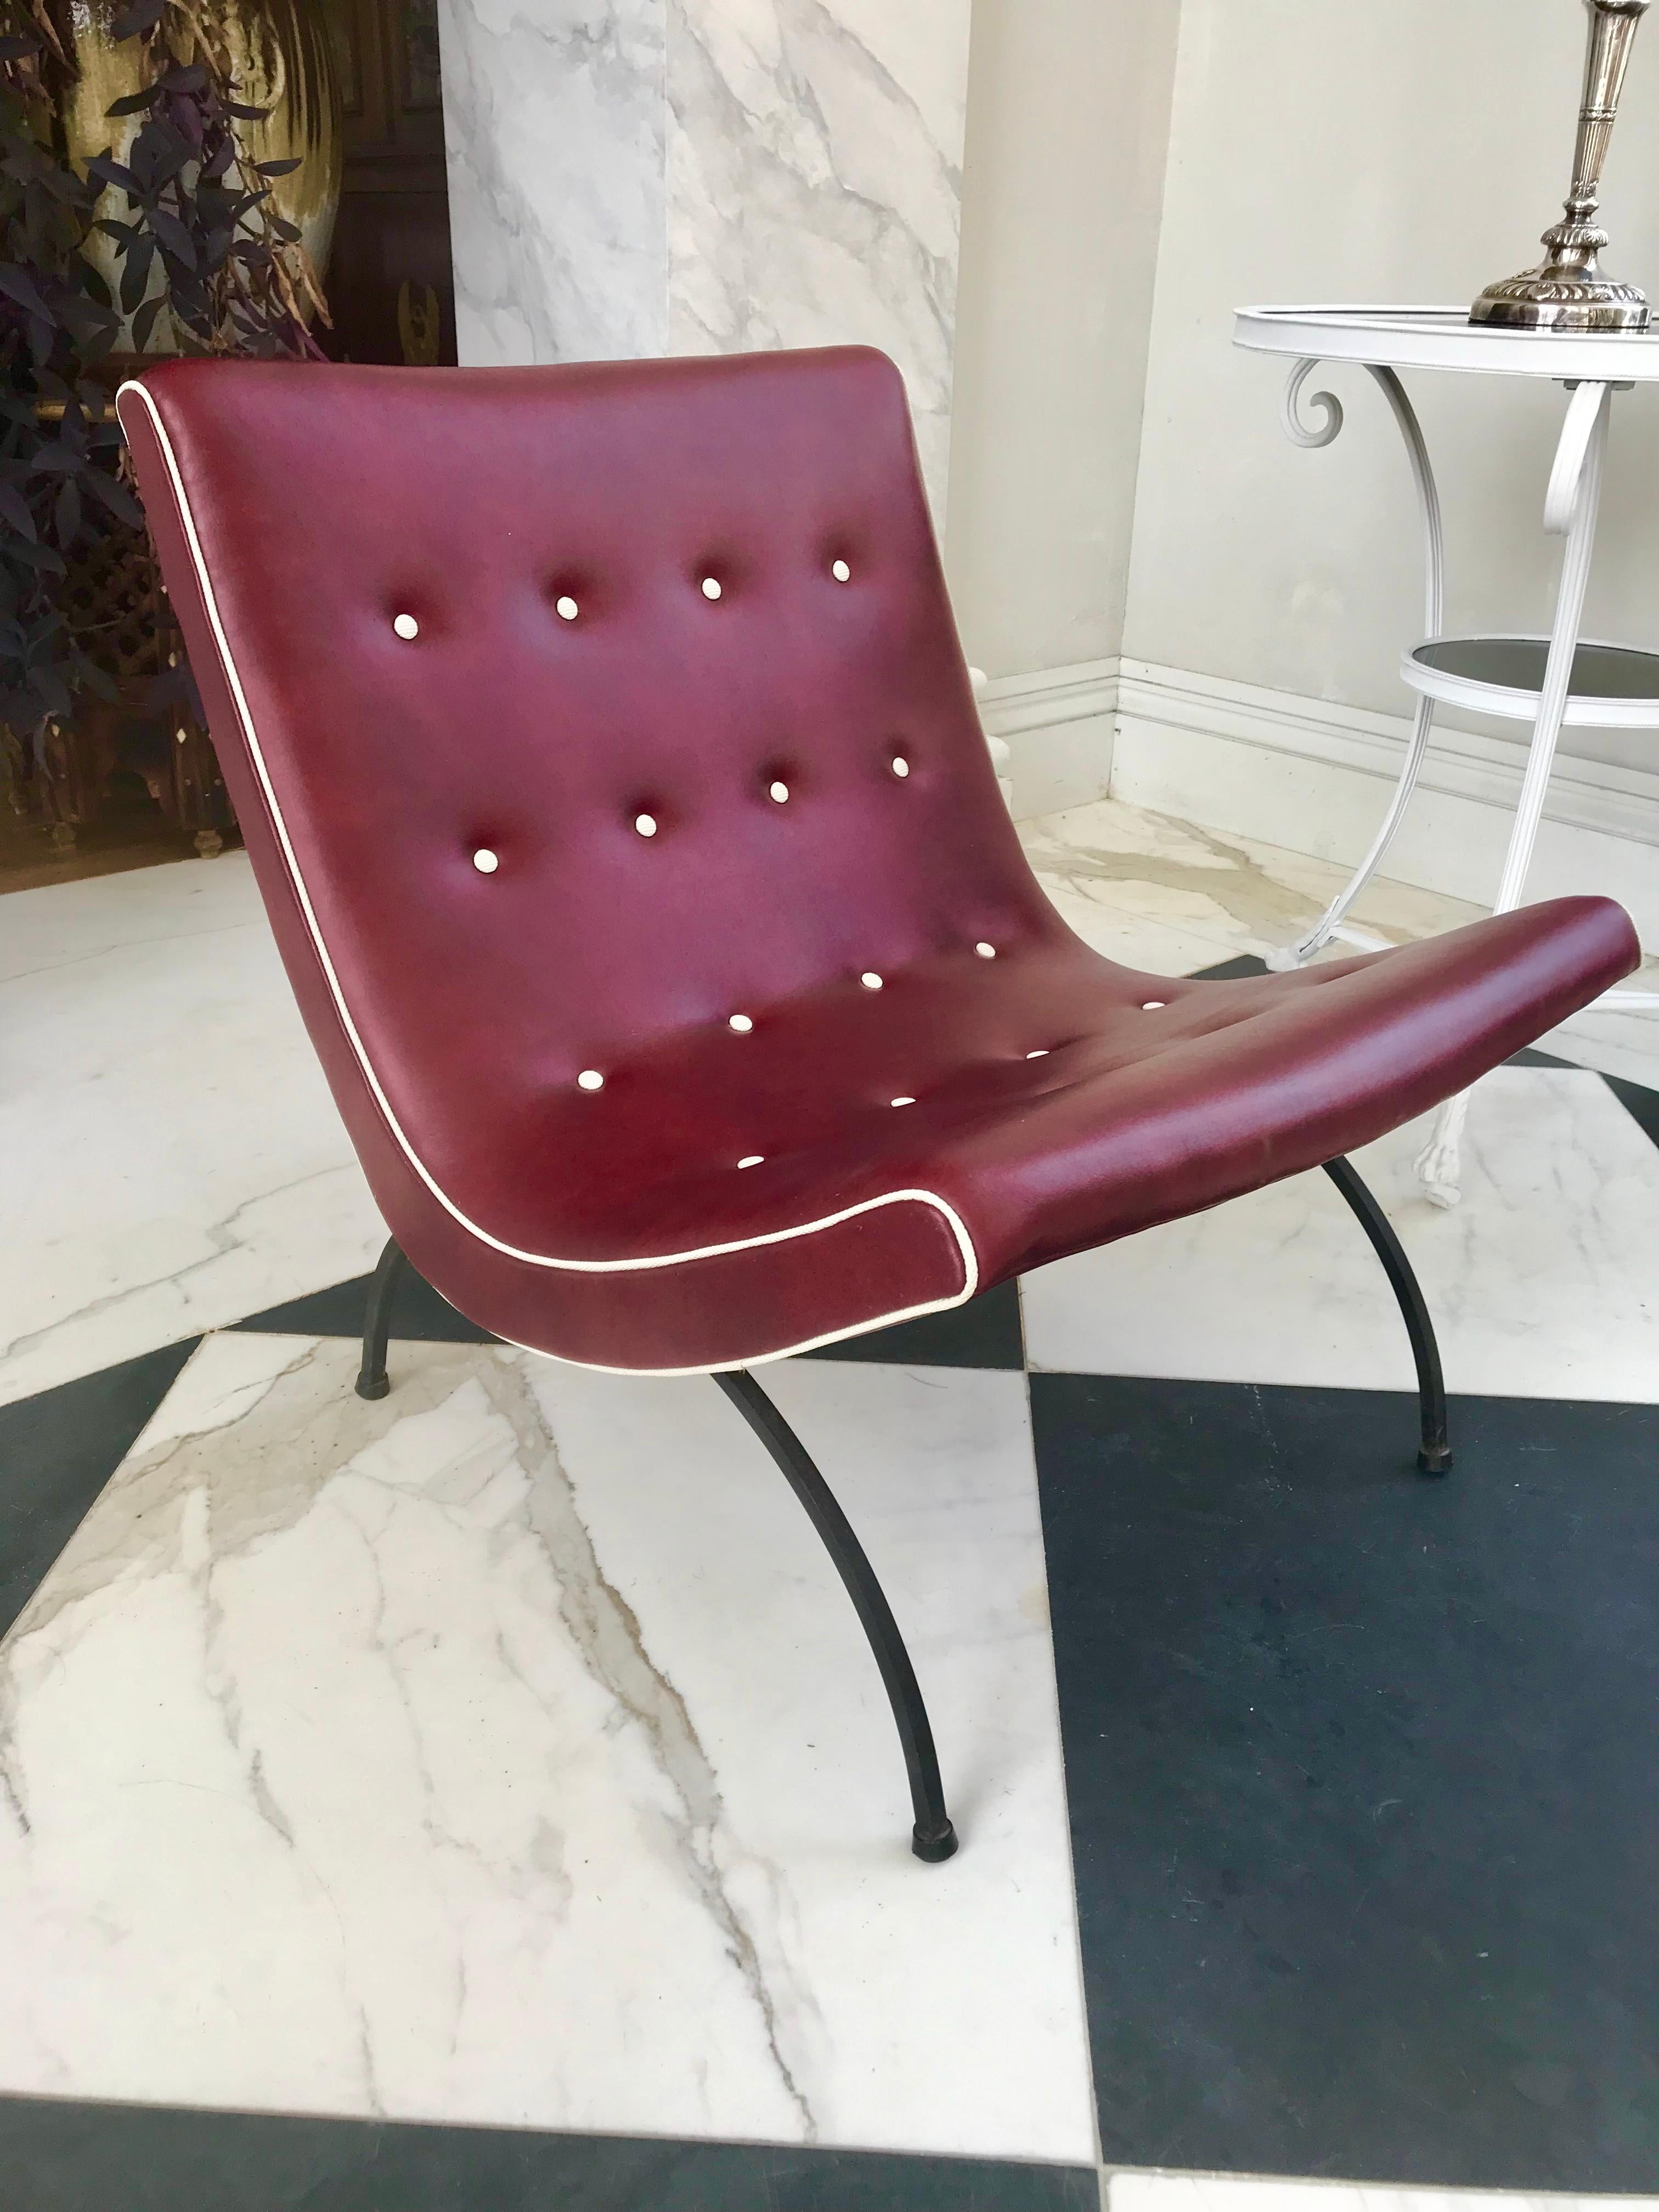 Trois fantastiques chaises longues scoop par DIA Design Institute of America dans le style de Milo Baughman.
Ils sont en excellent état avec le revêtement en vinyle d'origine. 
USA ca 1960